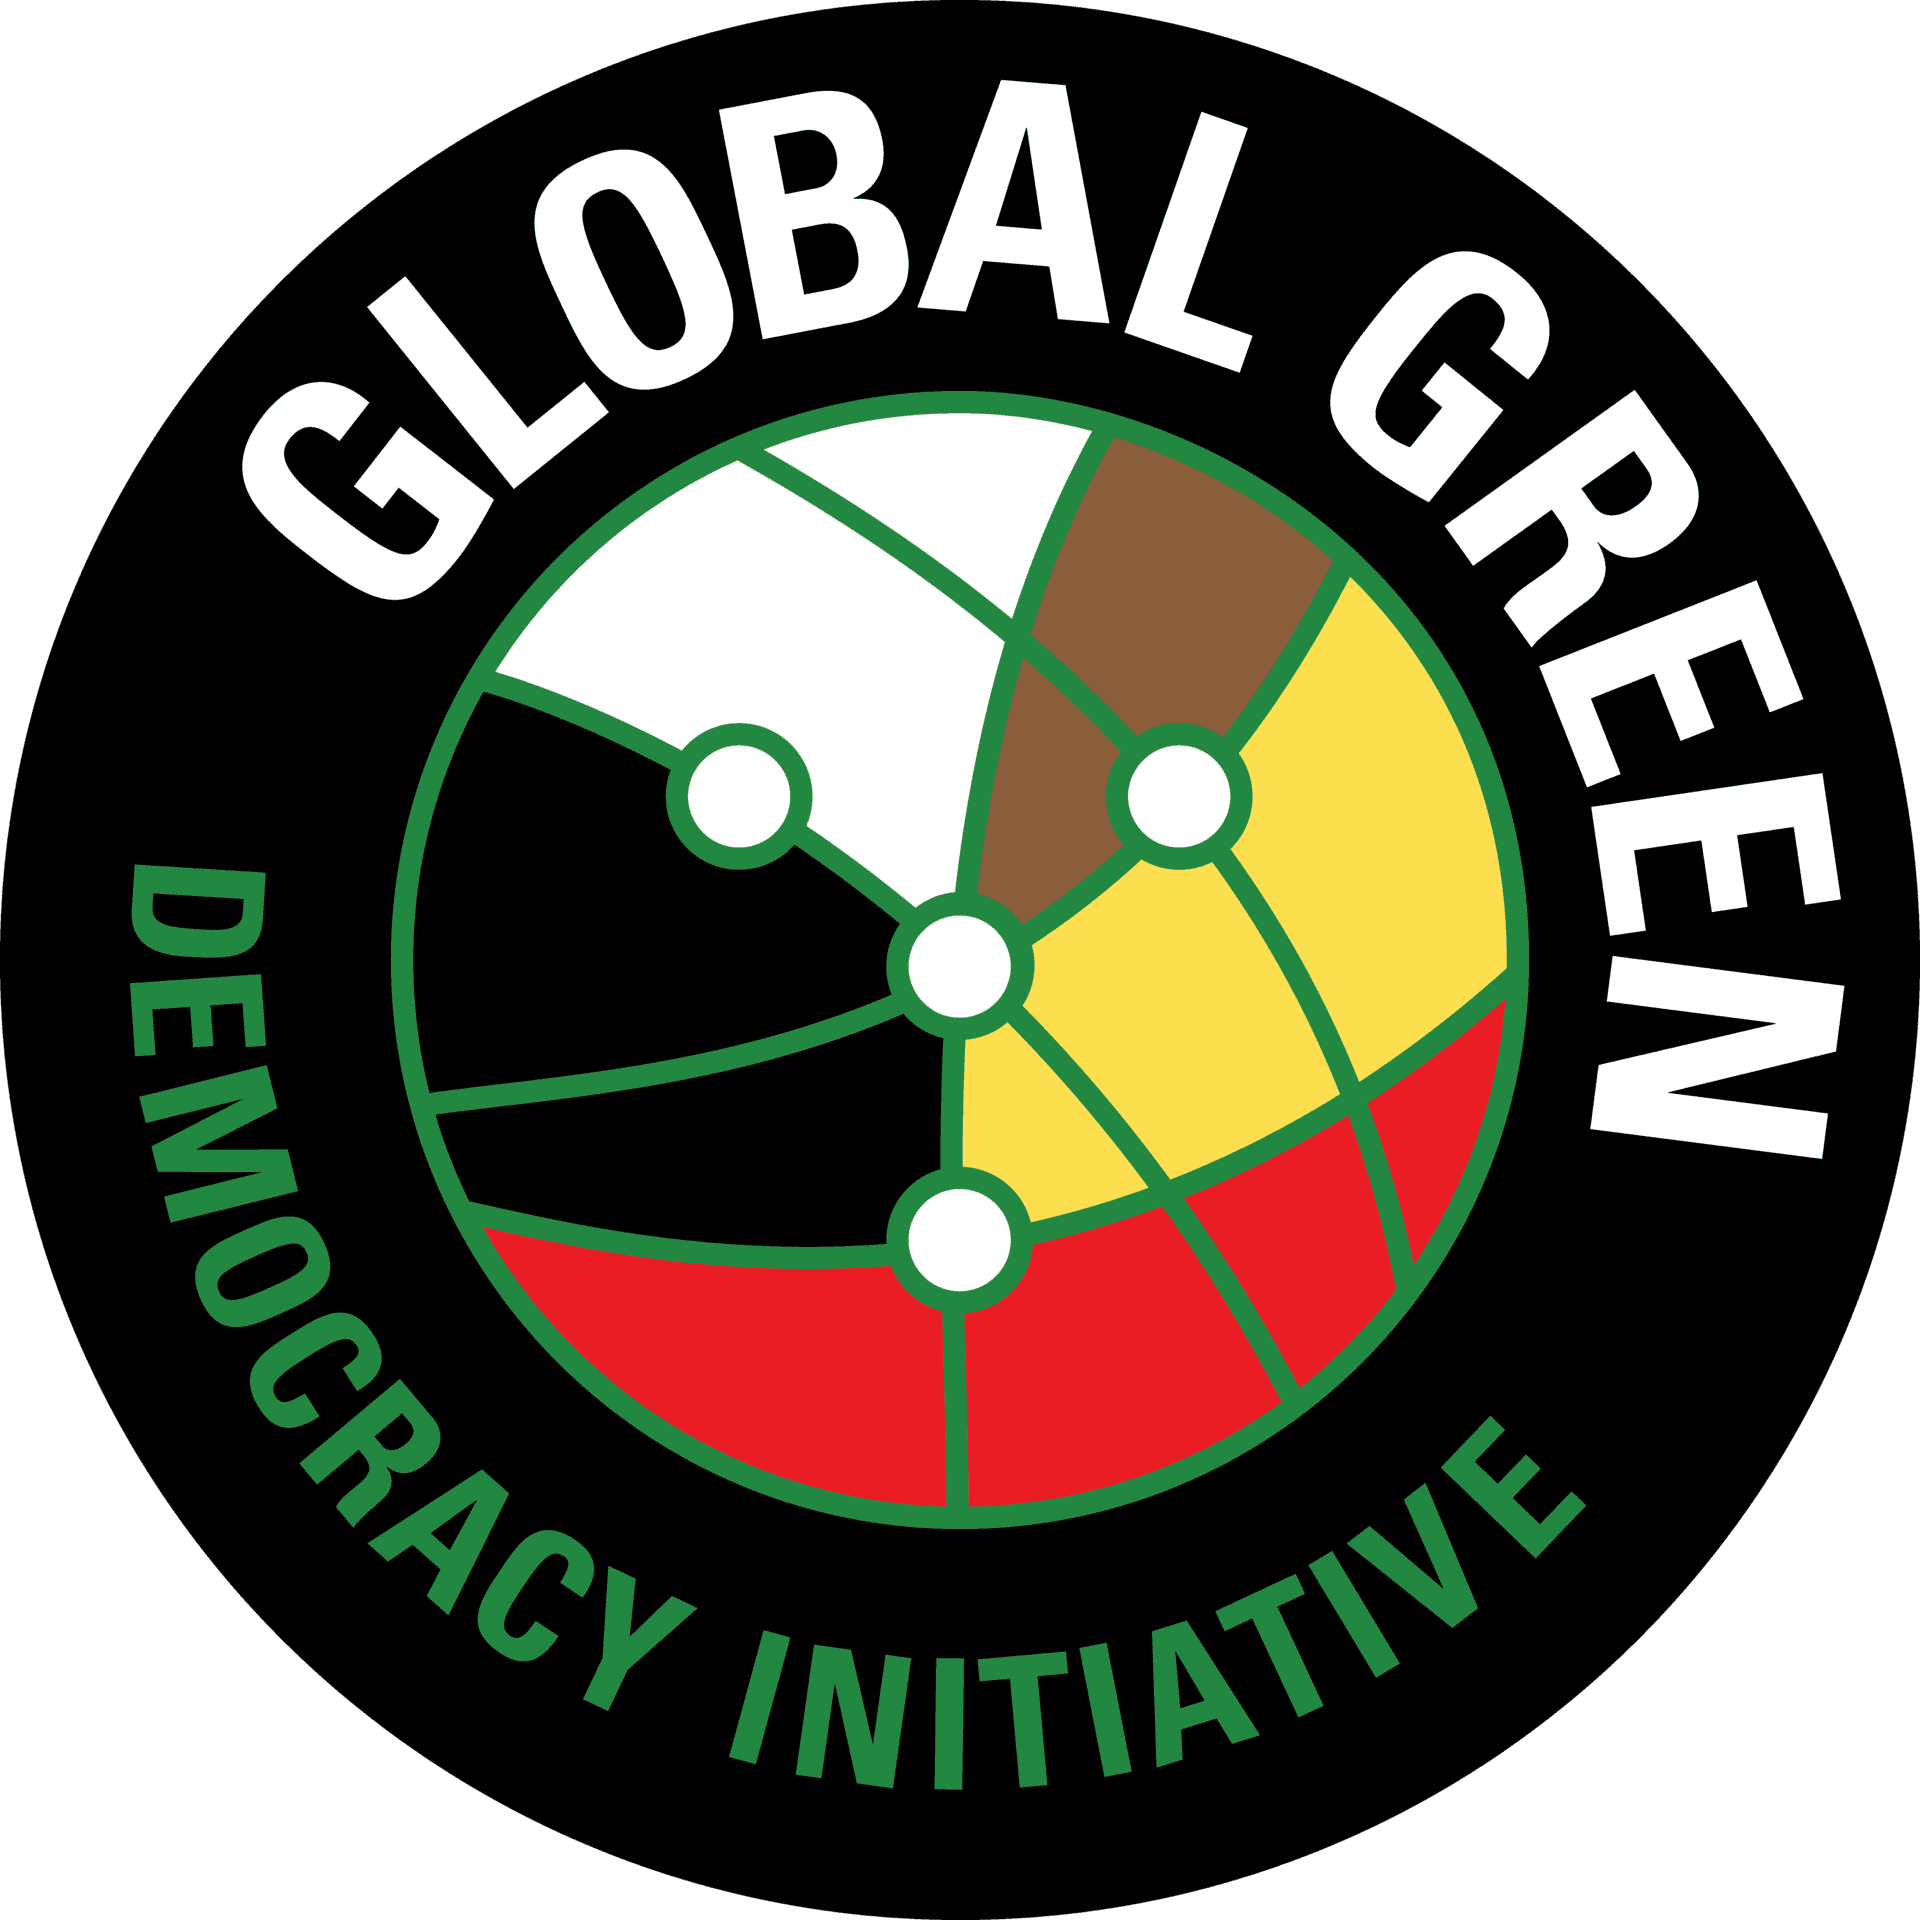 Global Green